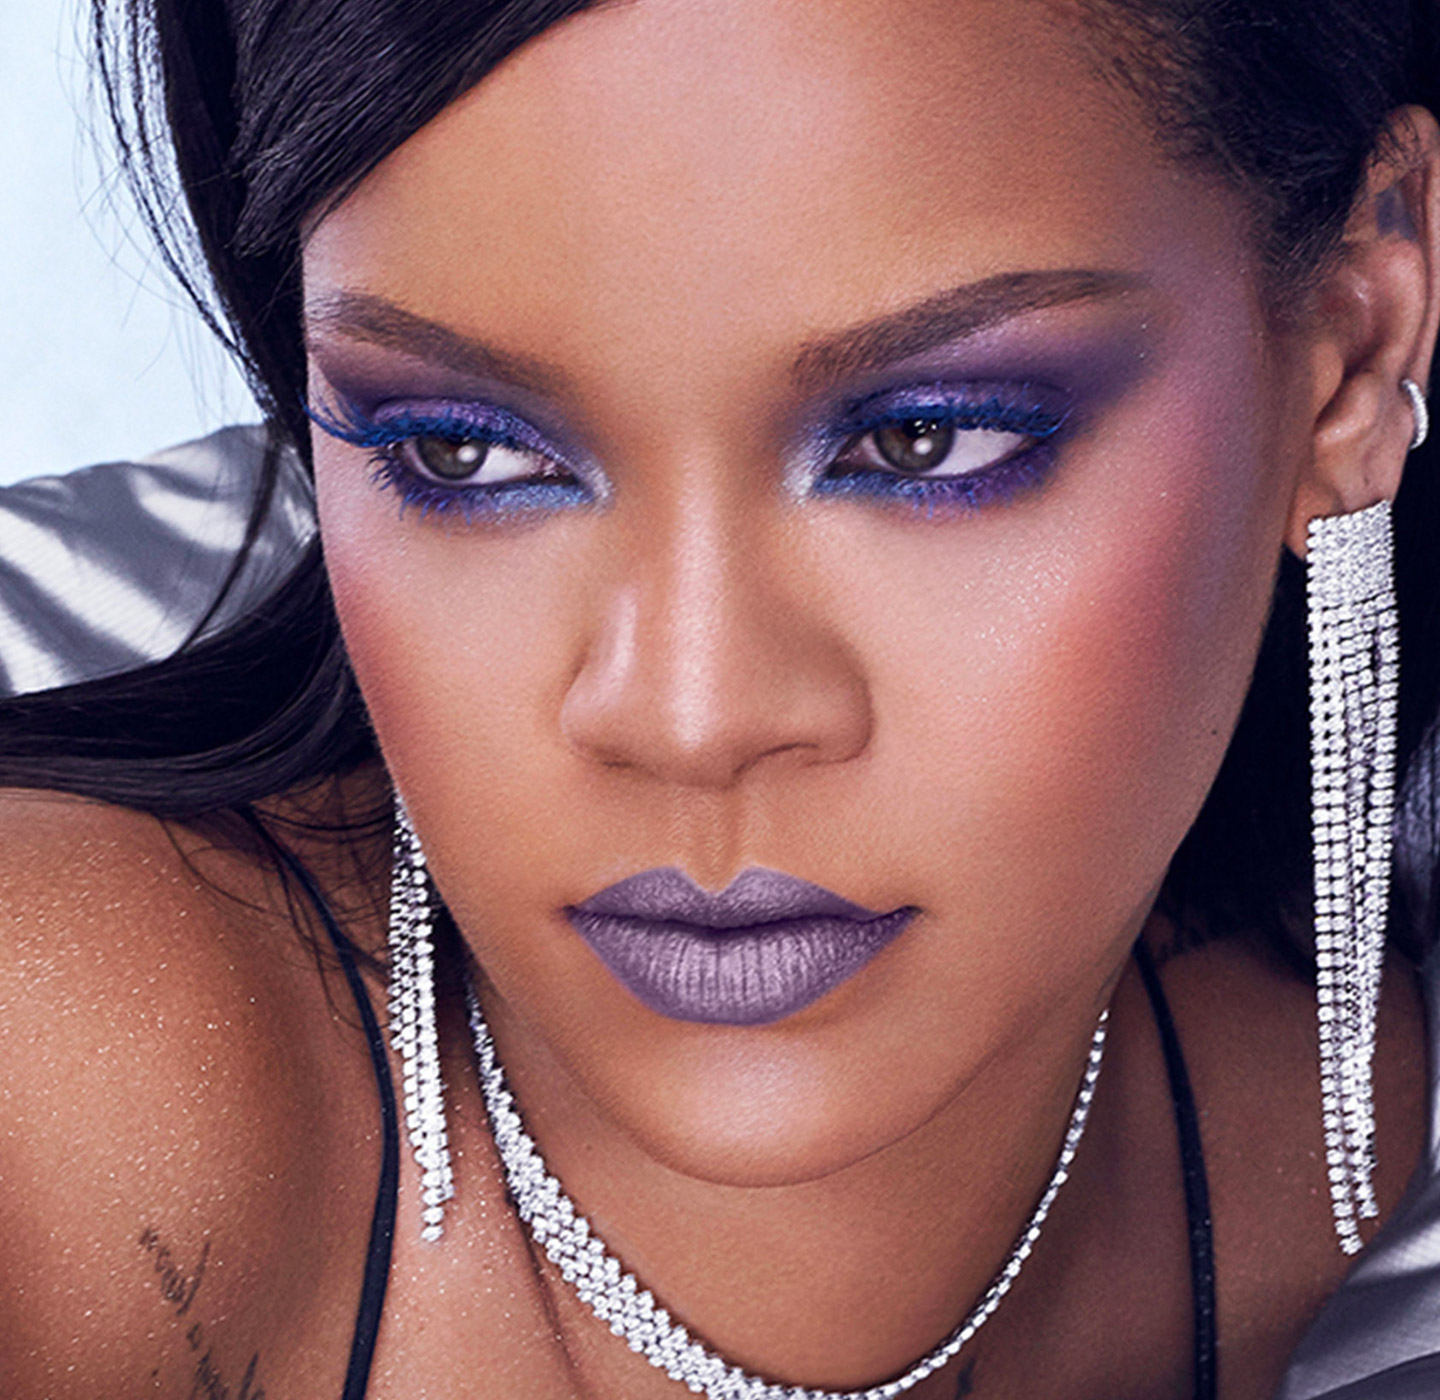 Headshot of Rihanna